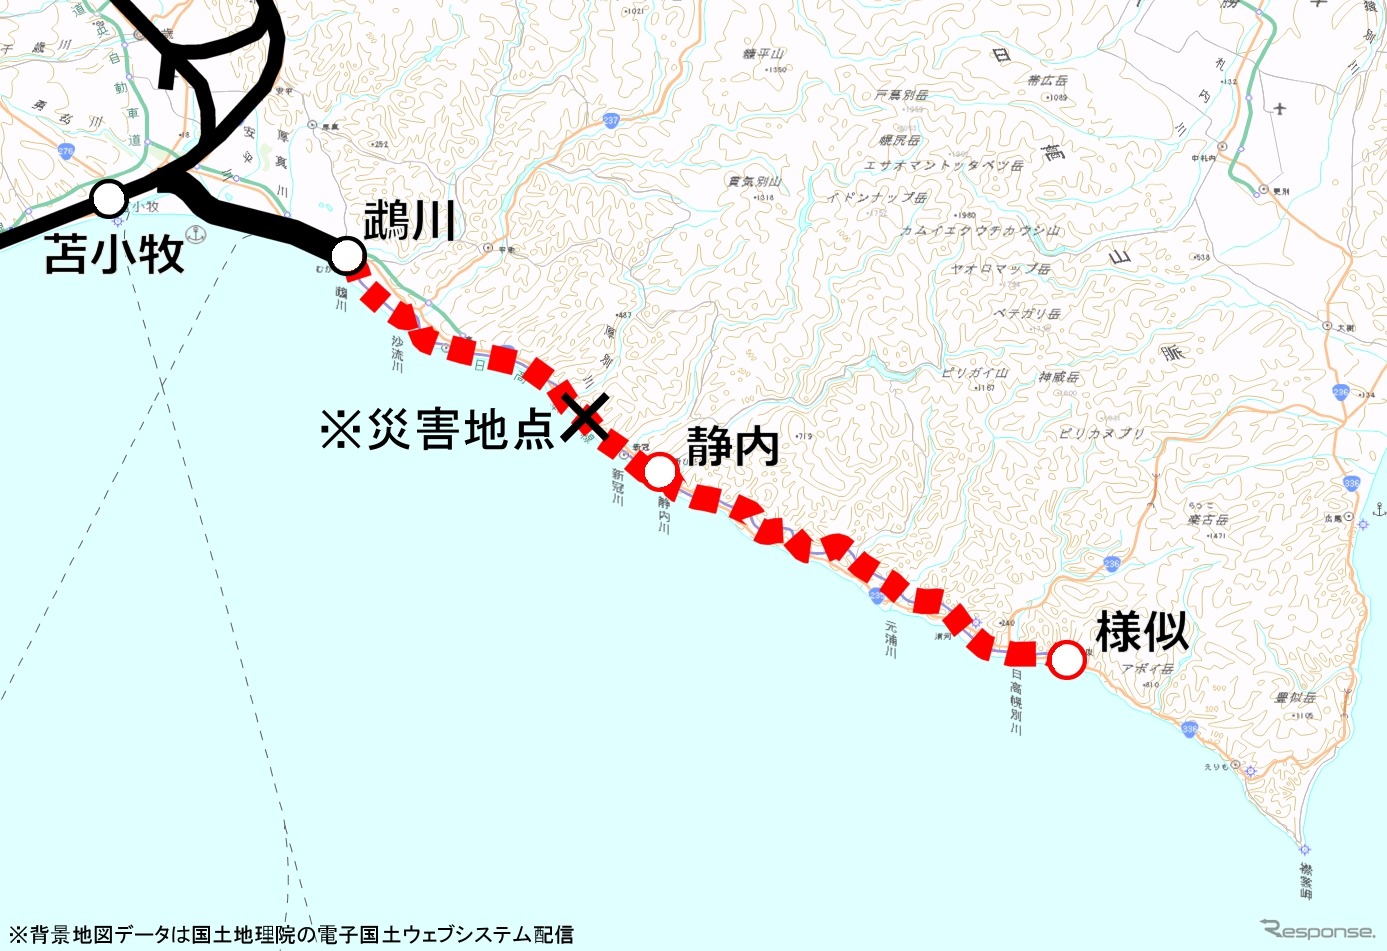 鵡川～様似間が運休中の日高本線の路線図。JR北海道の発表によると、工期は最短でも約30カ月かかる見込みだ。